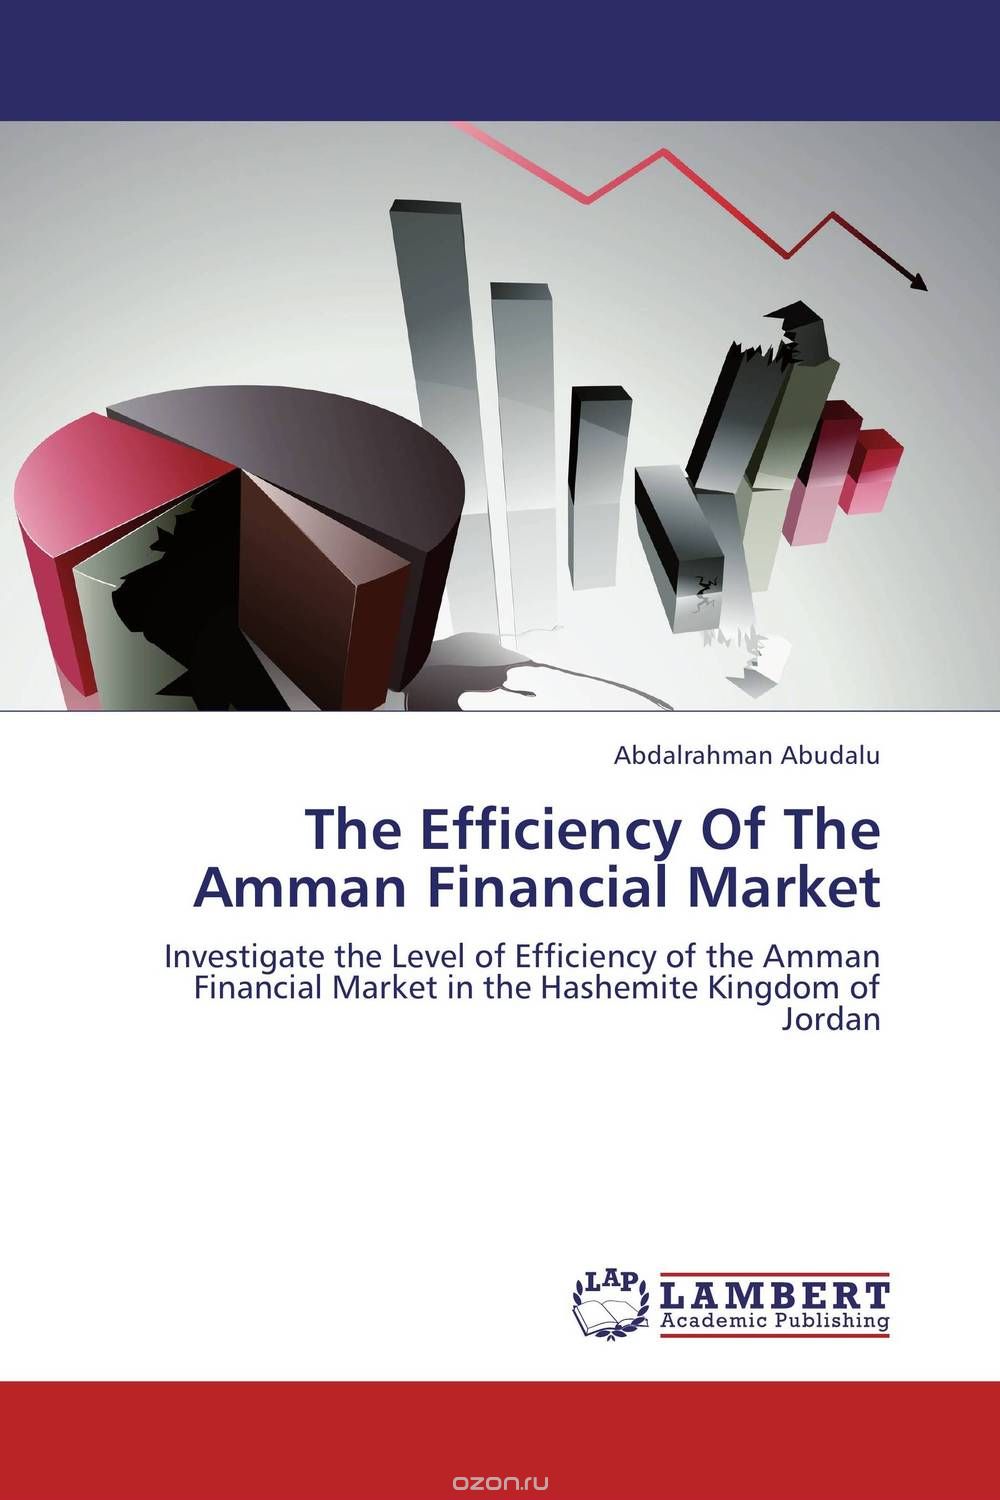 Скачать книгу "The Efficiency Of The Amman Financial Market"